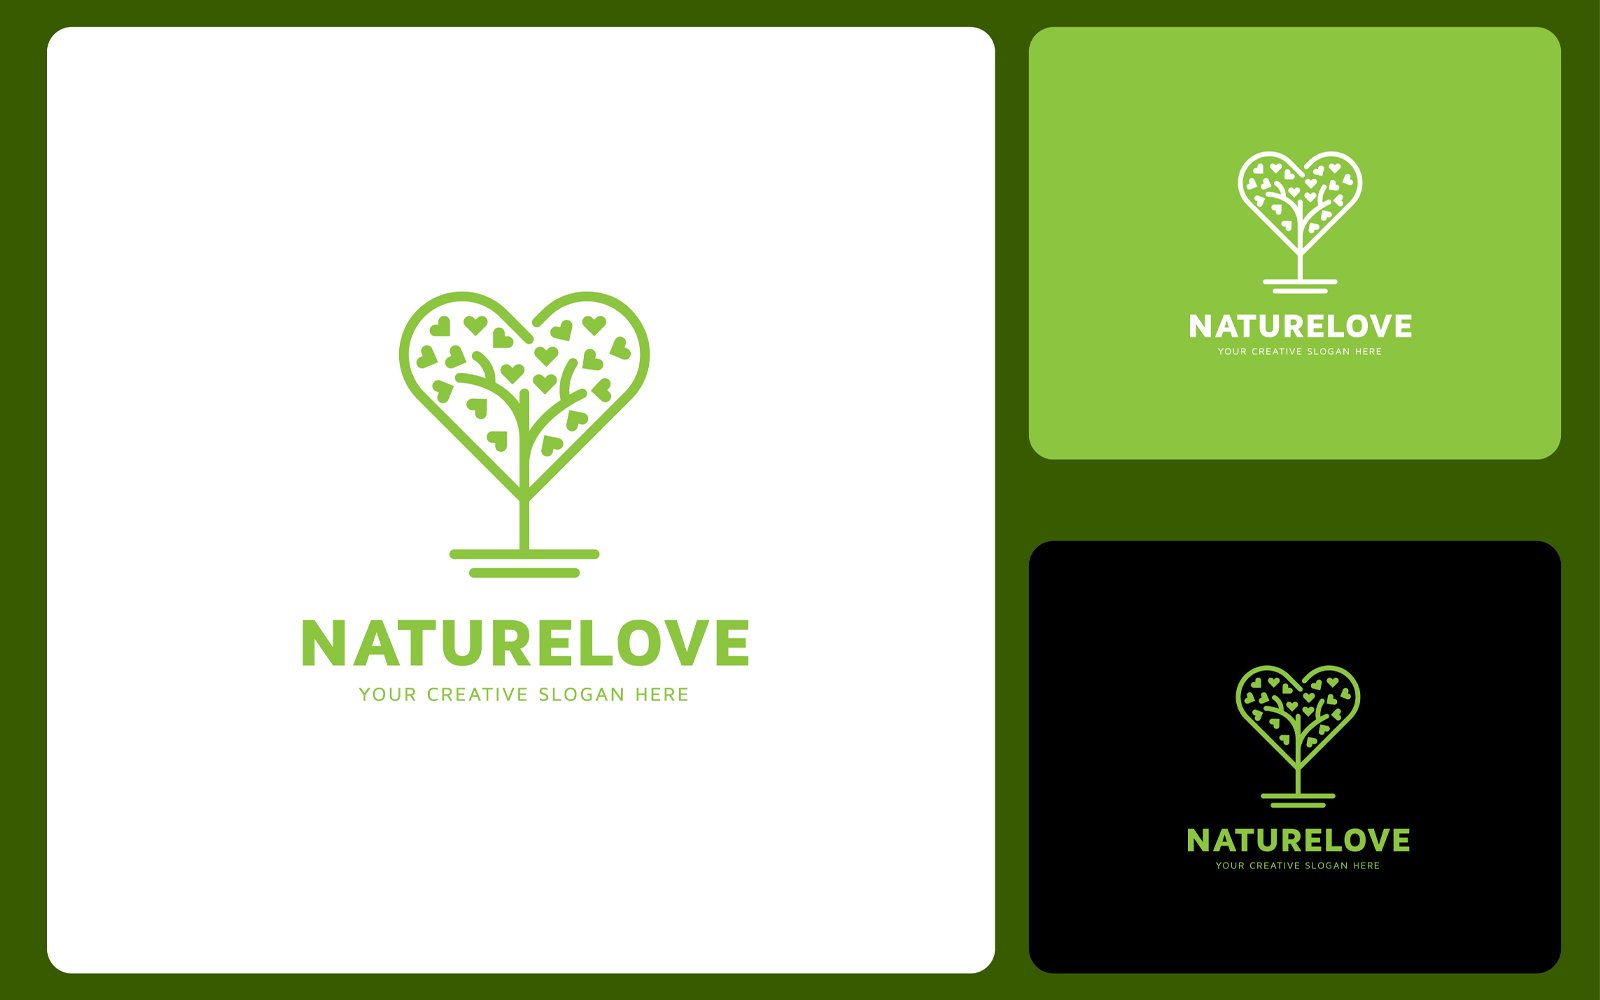 Kit Graphique #370110 Natural Love Divers Modles Web - Logo template Preview